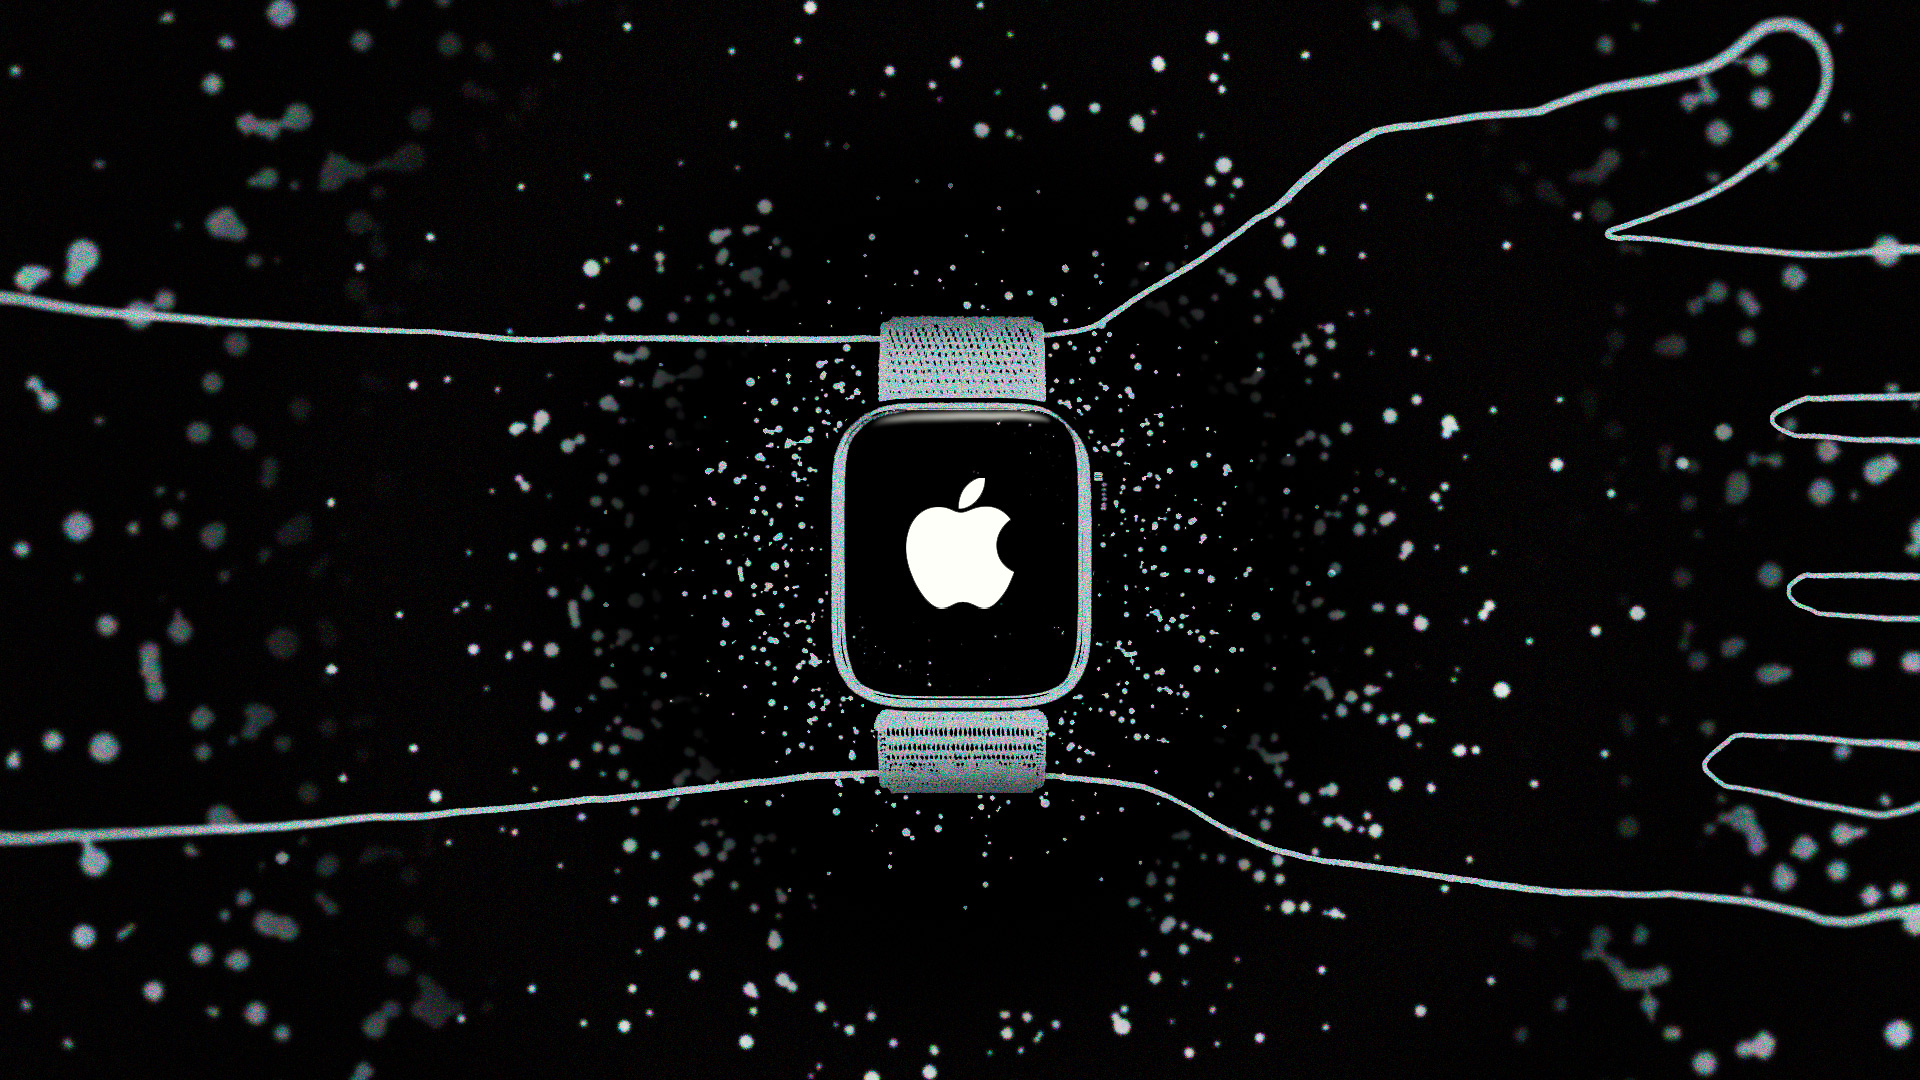 Apple Watch стали первыми умными часами, которые можно использовать в медицинских исследованиях